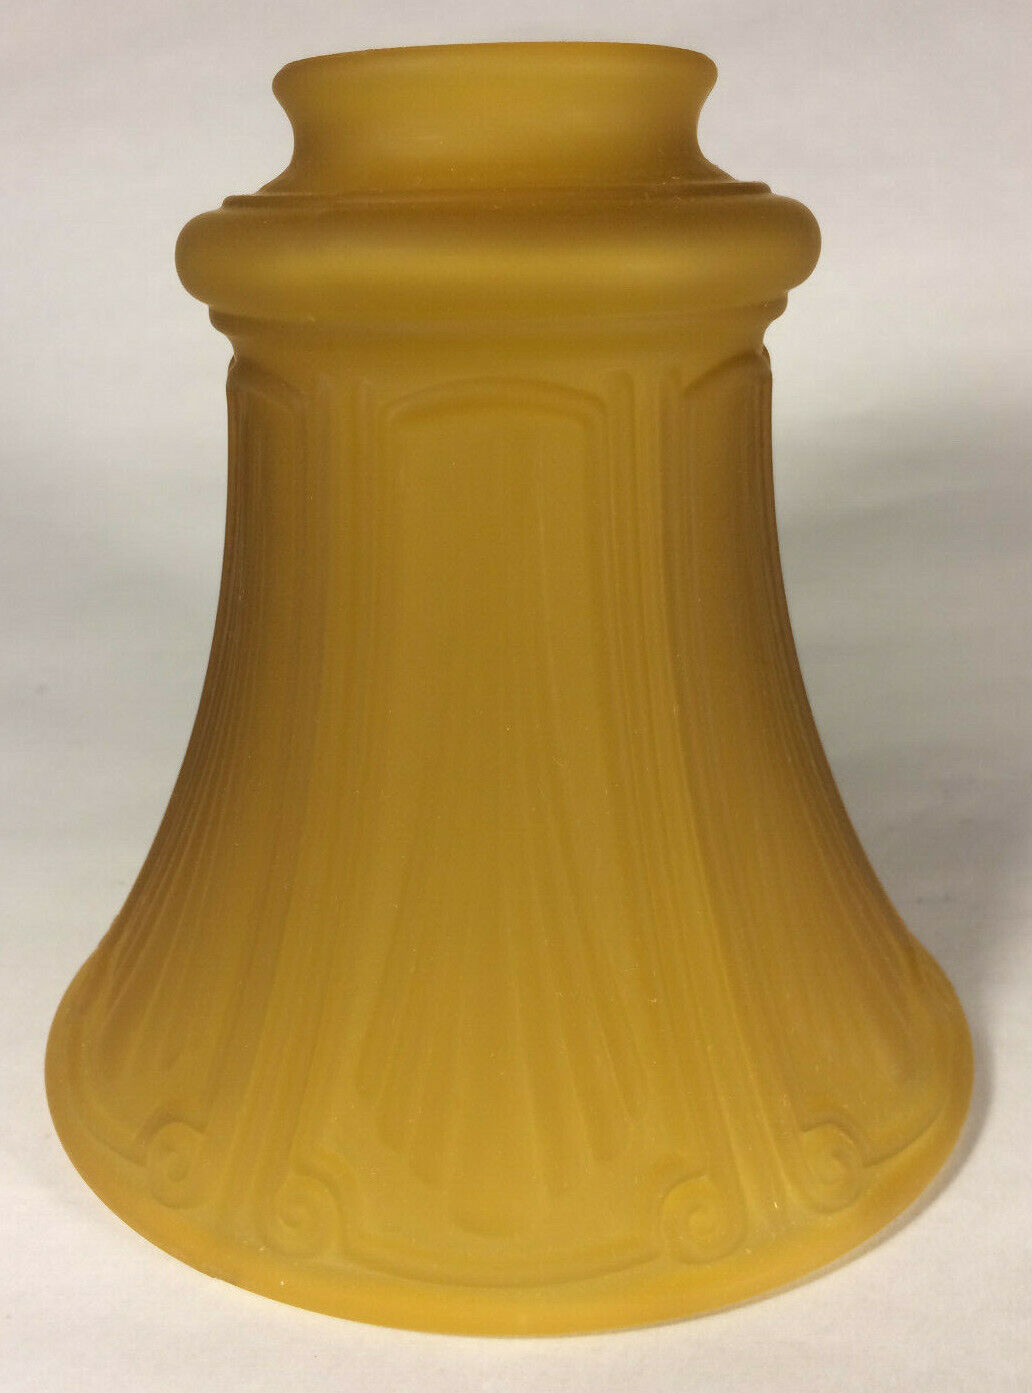 New Satin Amber Pan Light Fixture Shade, 2 1/4